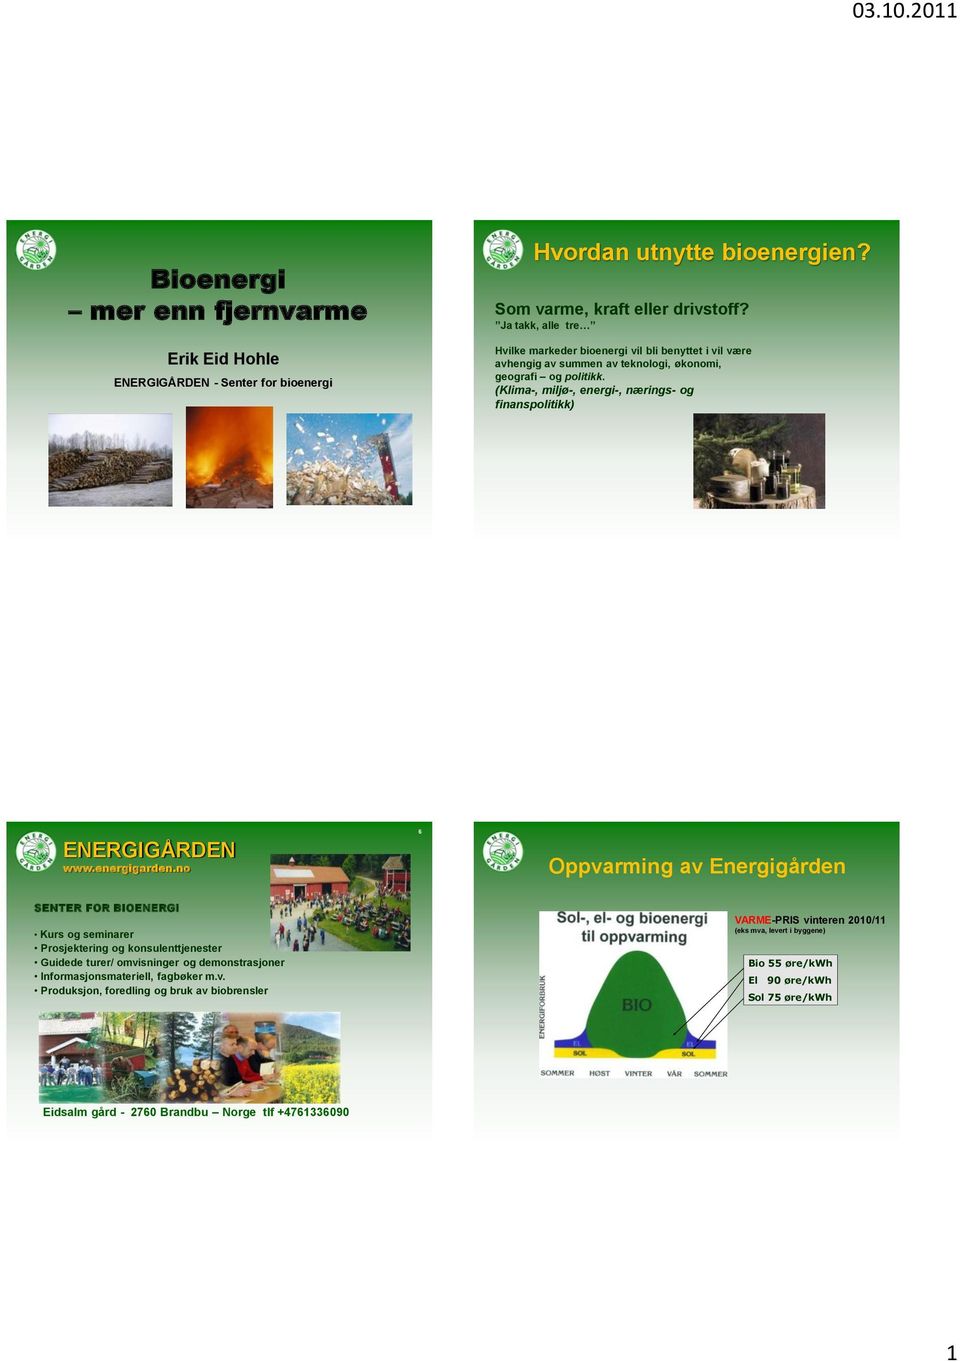 (Klima-, miljø-, energi-, nærings- og finanspolitikk) ENERGIGÅRDEN www.energigarden.